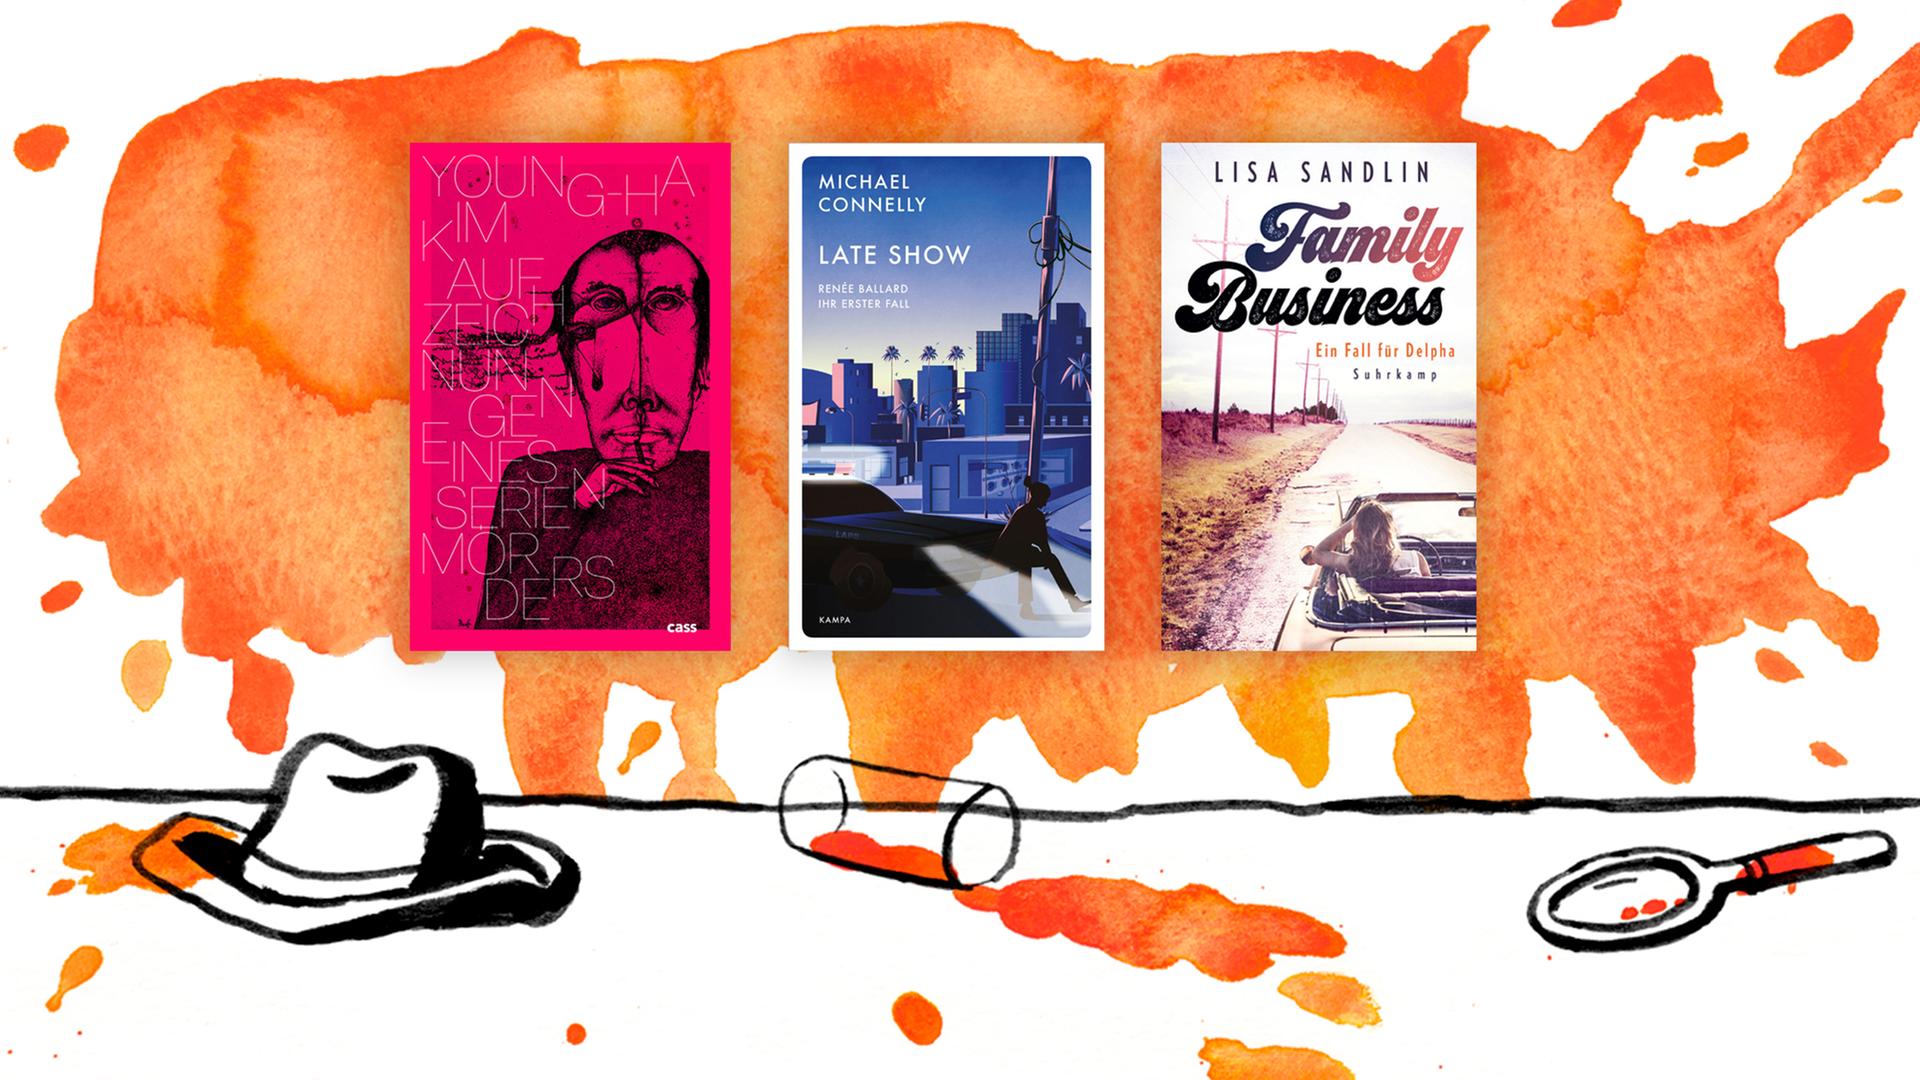 Zu sehen sind die drei Cover der ersten drei Buchtitel auf der Krimibestenliste im Mai 2020: "Aufzeichnungen eines Serienmörders" von Young-Ha Kim, "Heaven, Late Show" von Michael Connelly und "Family Business" von Lisa Sandlin.